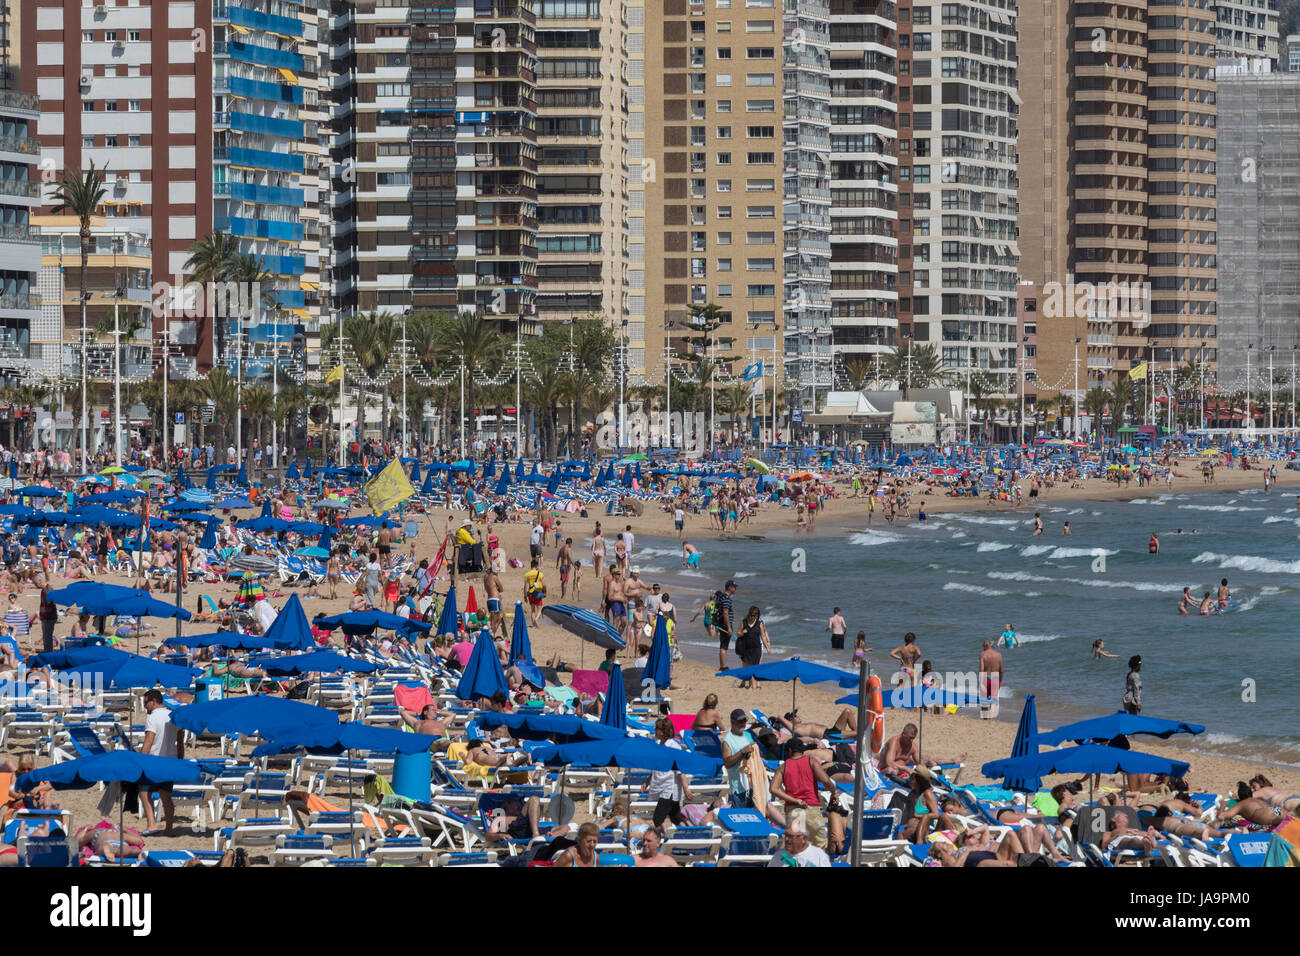 Massen von Urlaubern in Benidorm - Spanien.  Eine Stadt in der Provinz Alicante an der Costa Blanca im Osten Spaniens, an der Mittelmeerküste. Stockfoto